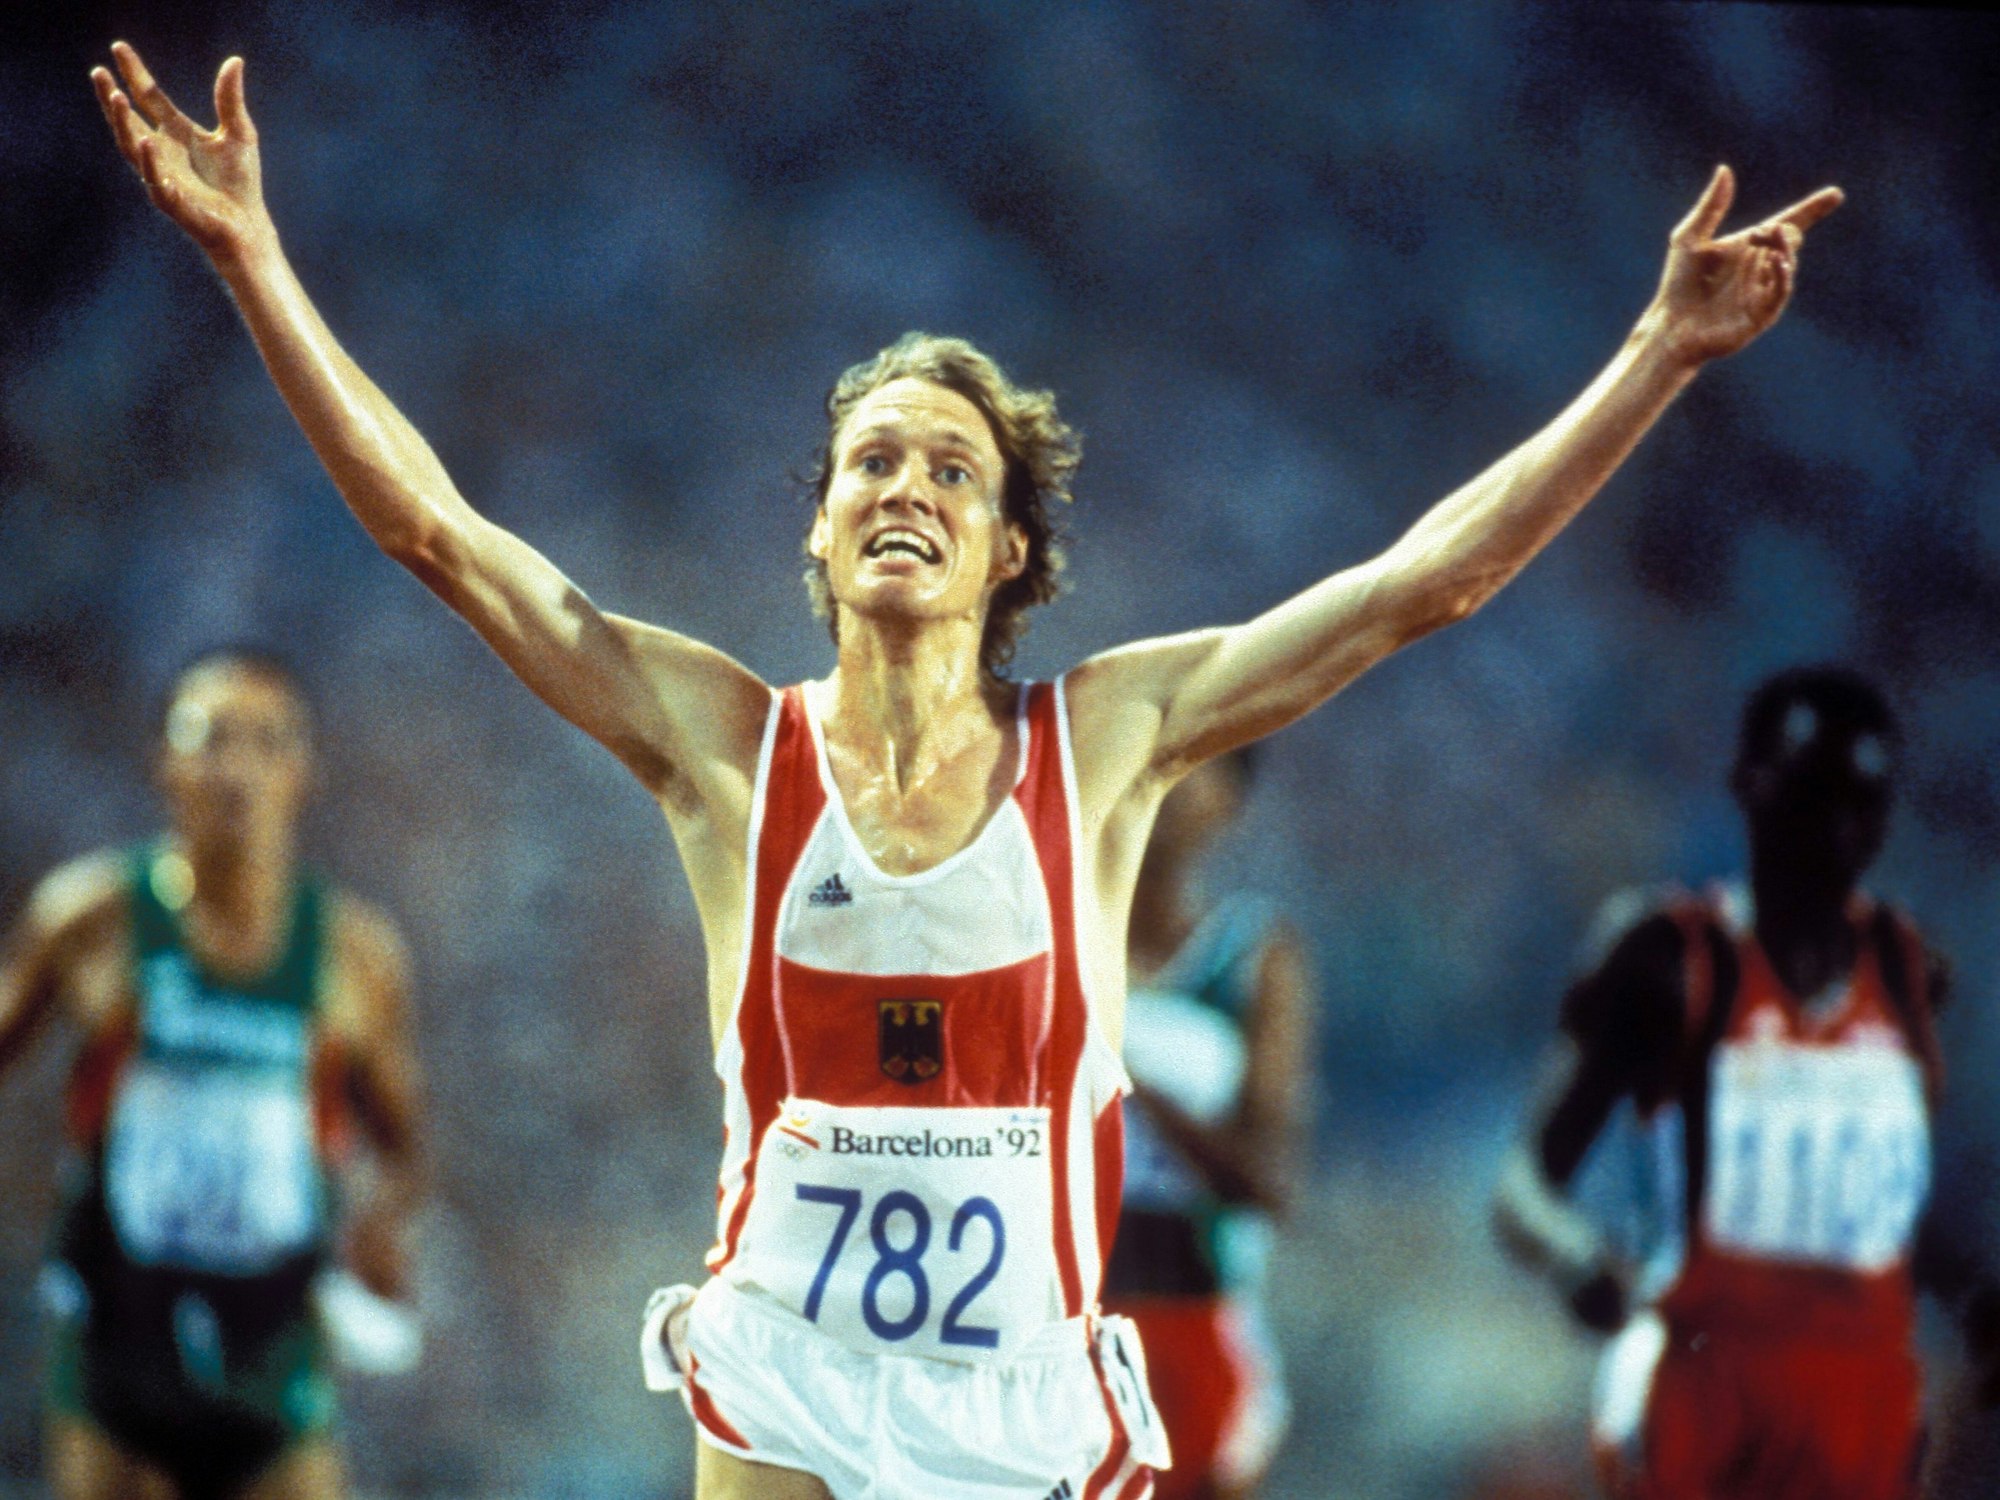 Dieter Baumann jubelt nach seinem Olympiasieg über 5000m 1992 in Barcelona.